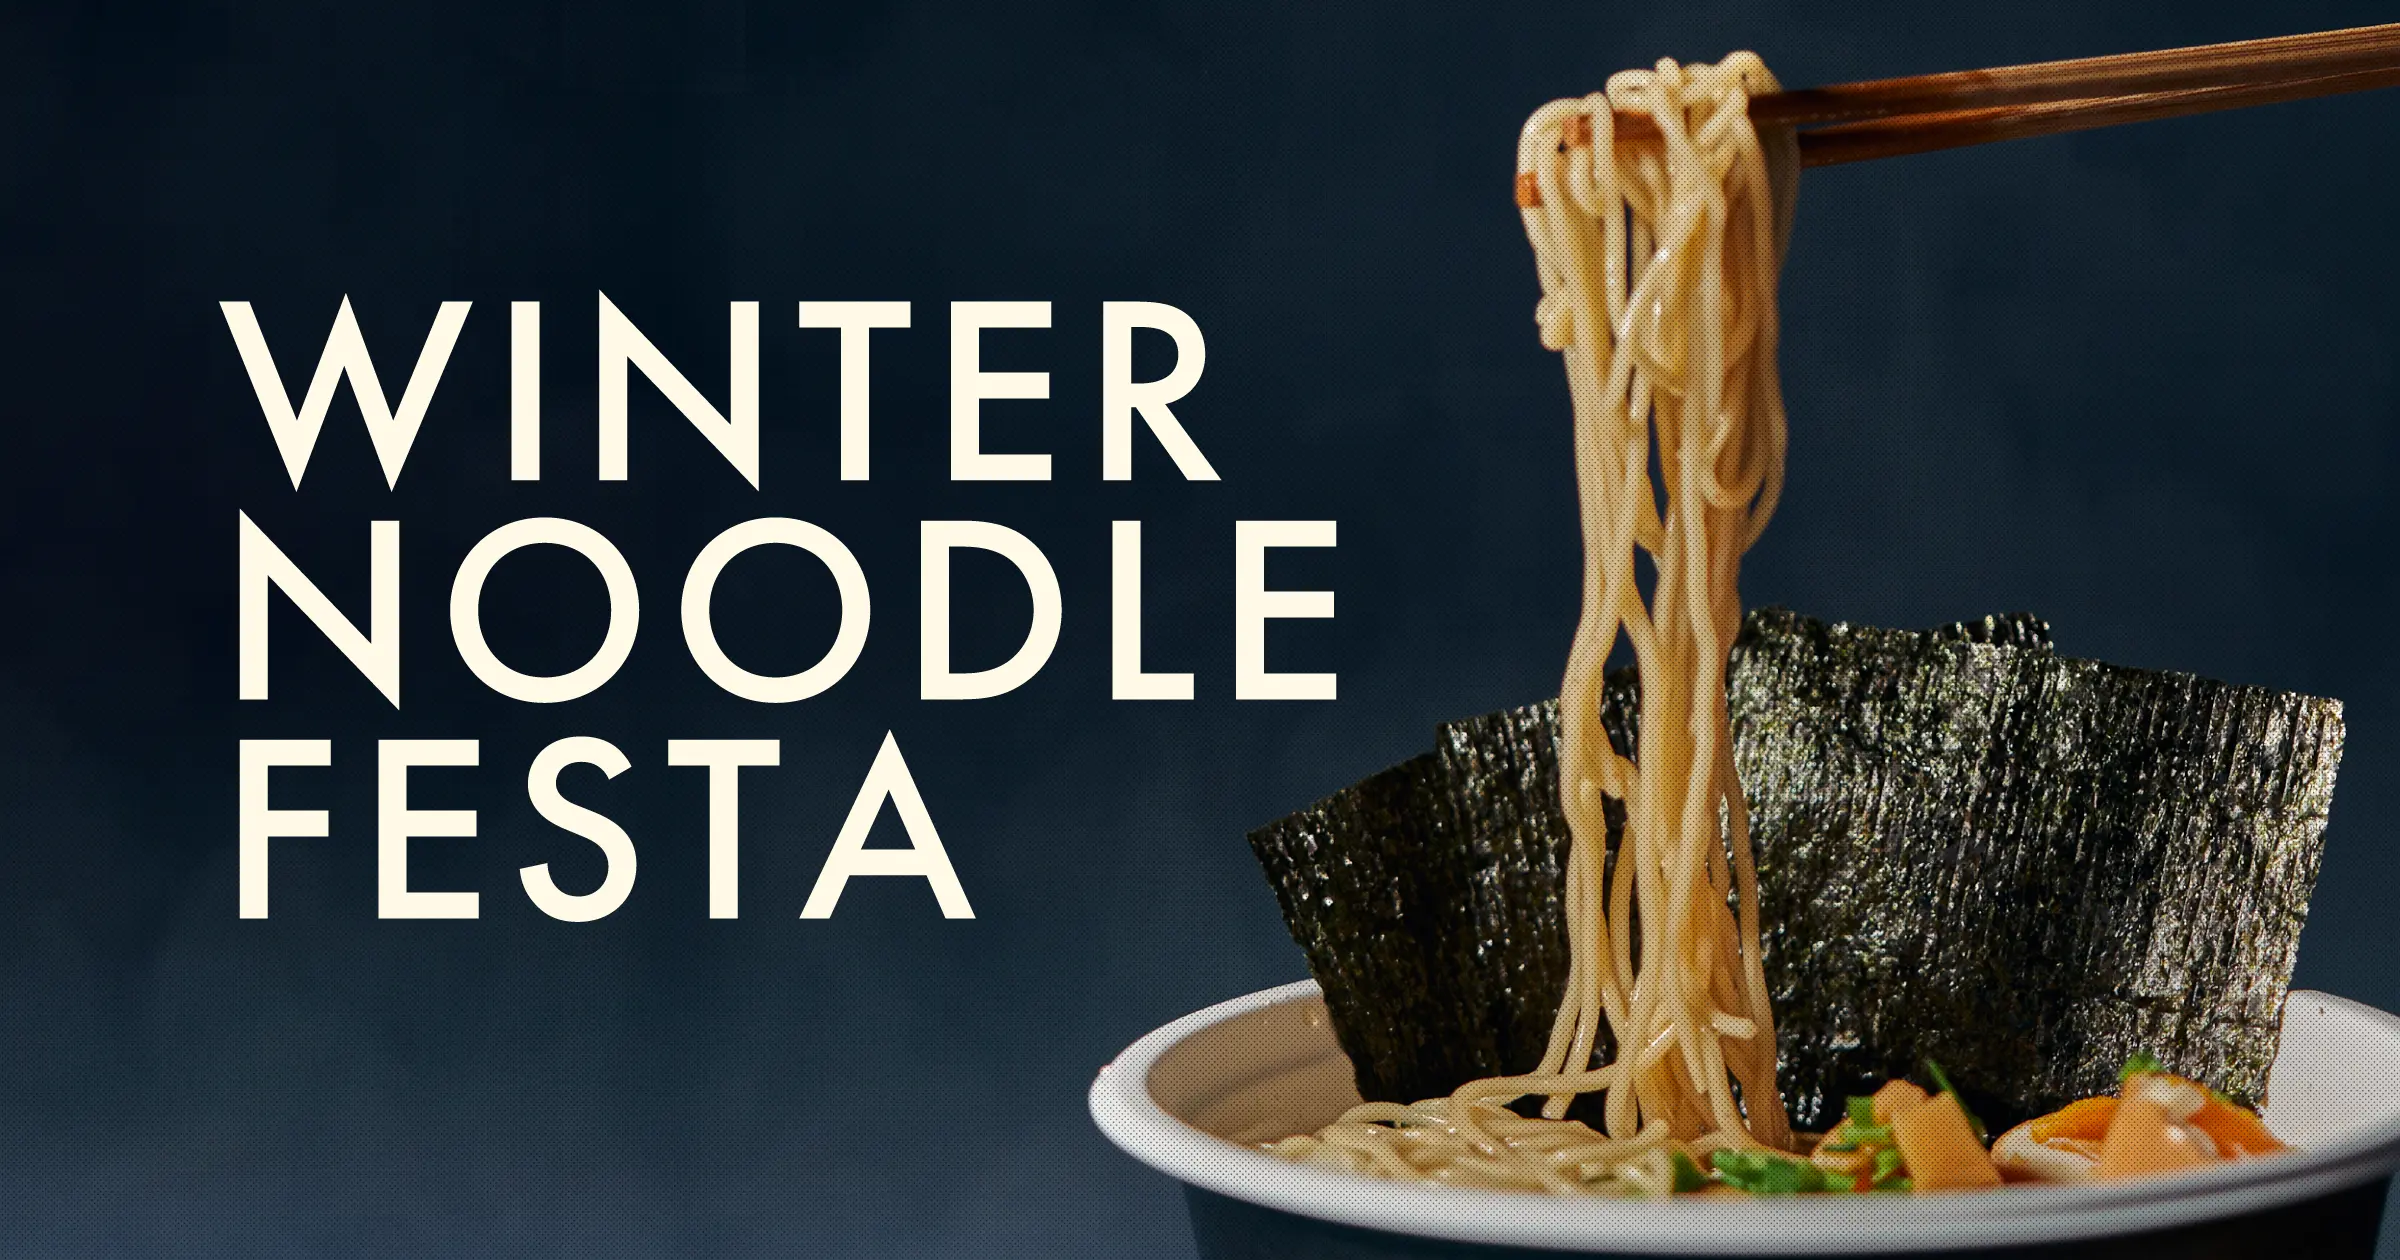 Winter Noodle Festa